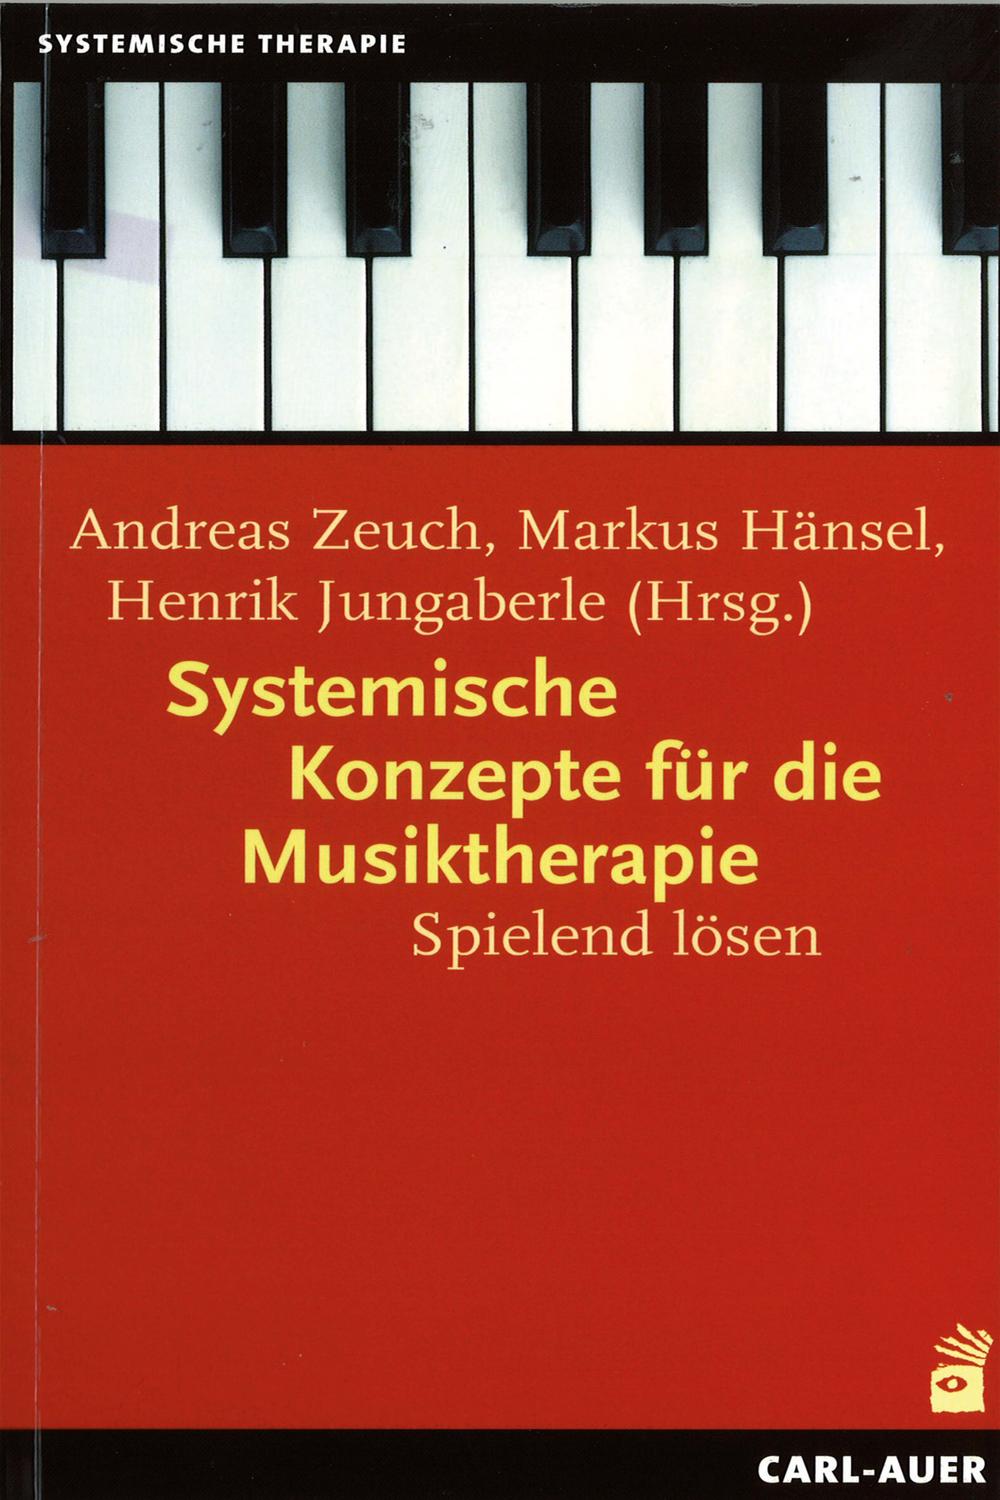 Systemische Konzepte für die Musiktherapie - Andreas Zeuch, Markus Hänsel, Henrik Jungaberle